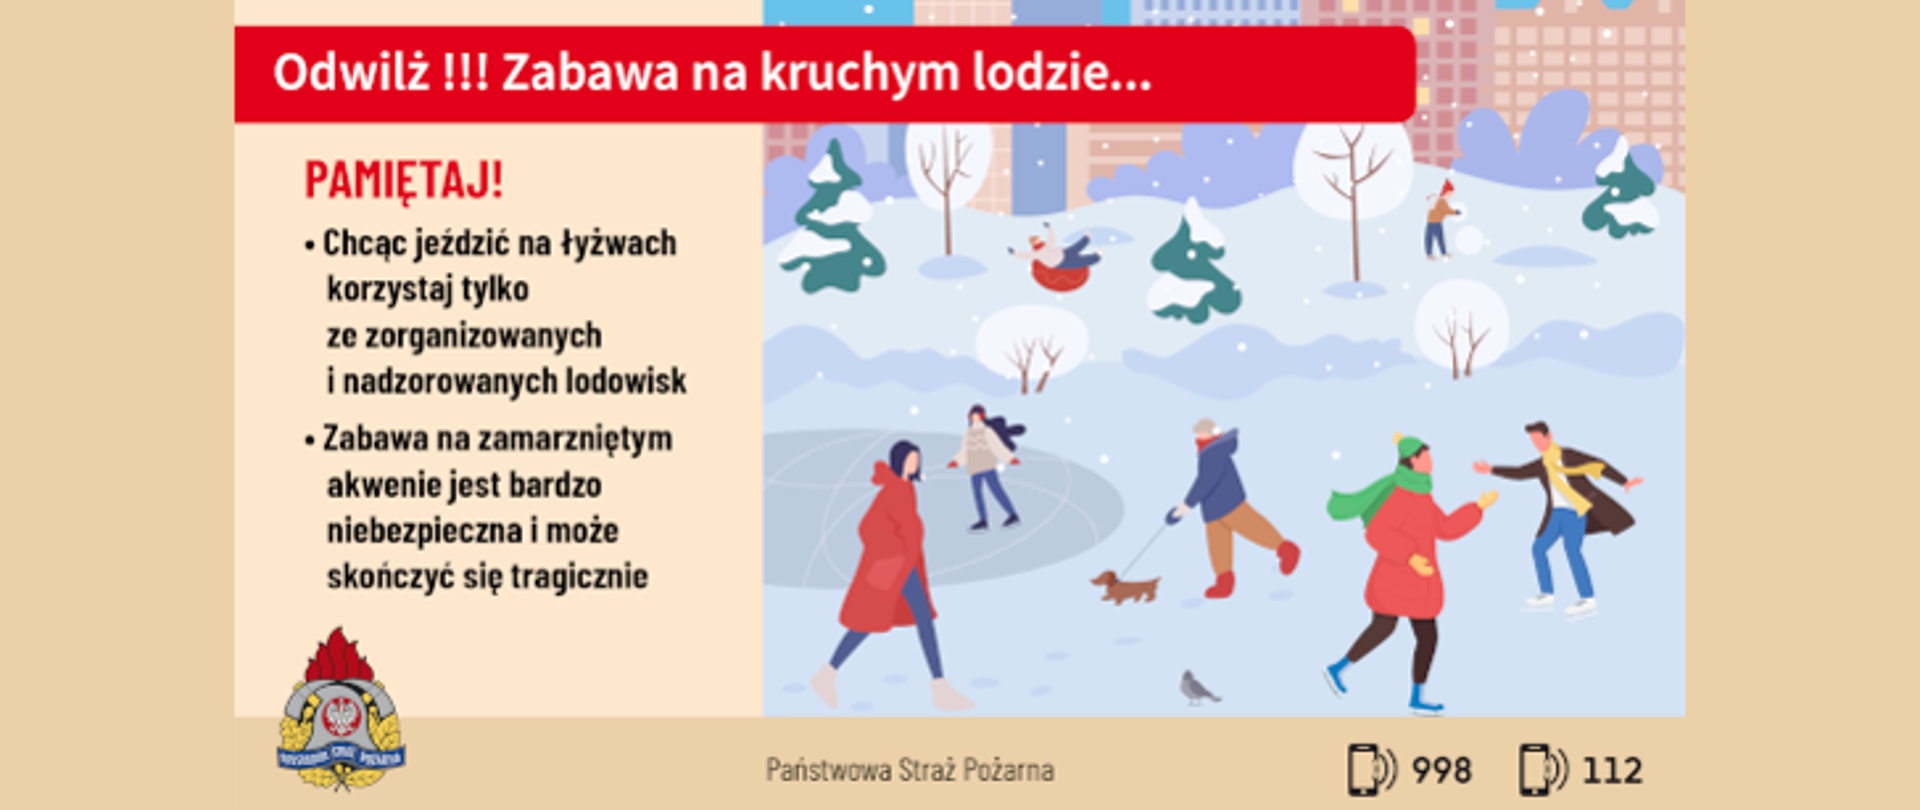 Ilustracja przedstawia ostrzeżenie wydane przez PSP odnośnie bezpieczeństwa na lodzie.